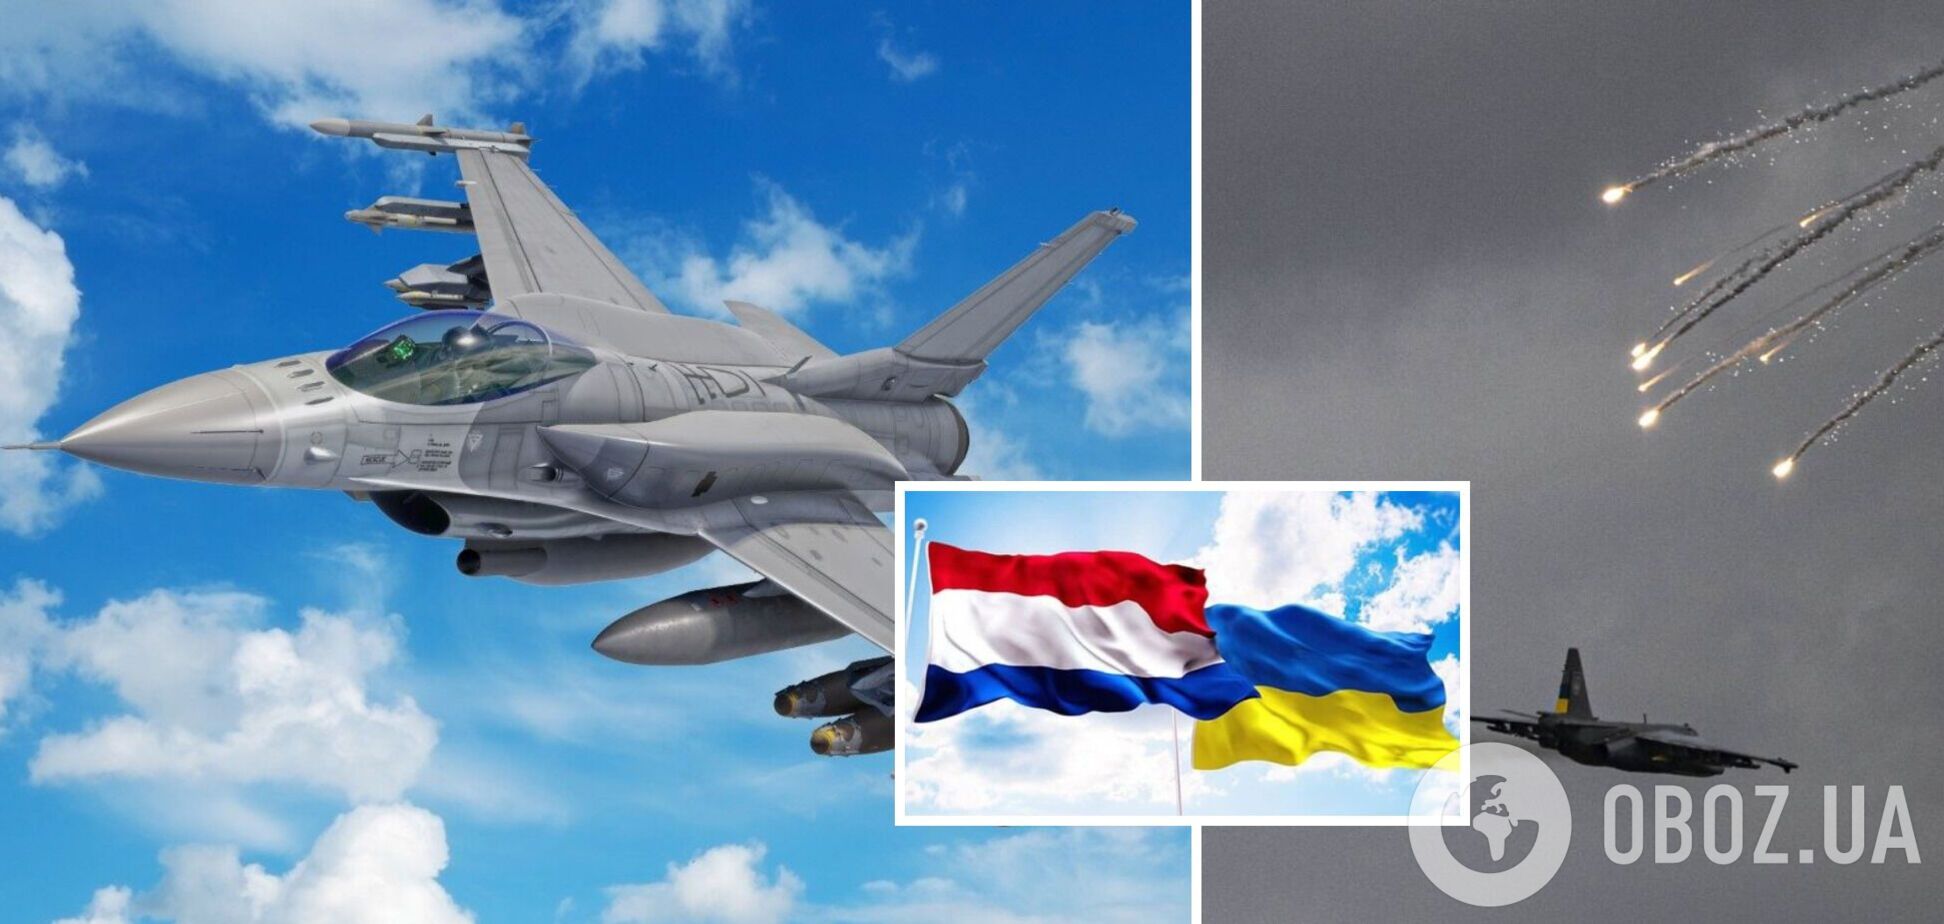 Нидерланды рассмотрят просьбу Украины про истребители  F-16, если получат такой запрос, – премьер-министр Рютте